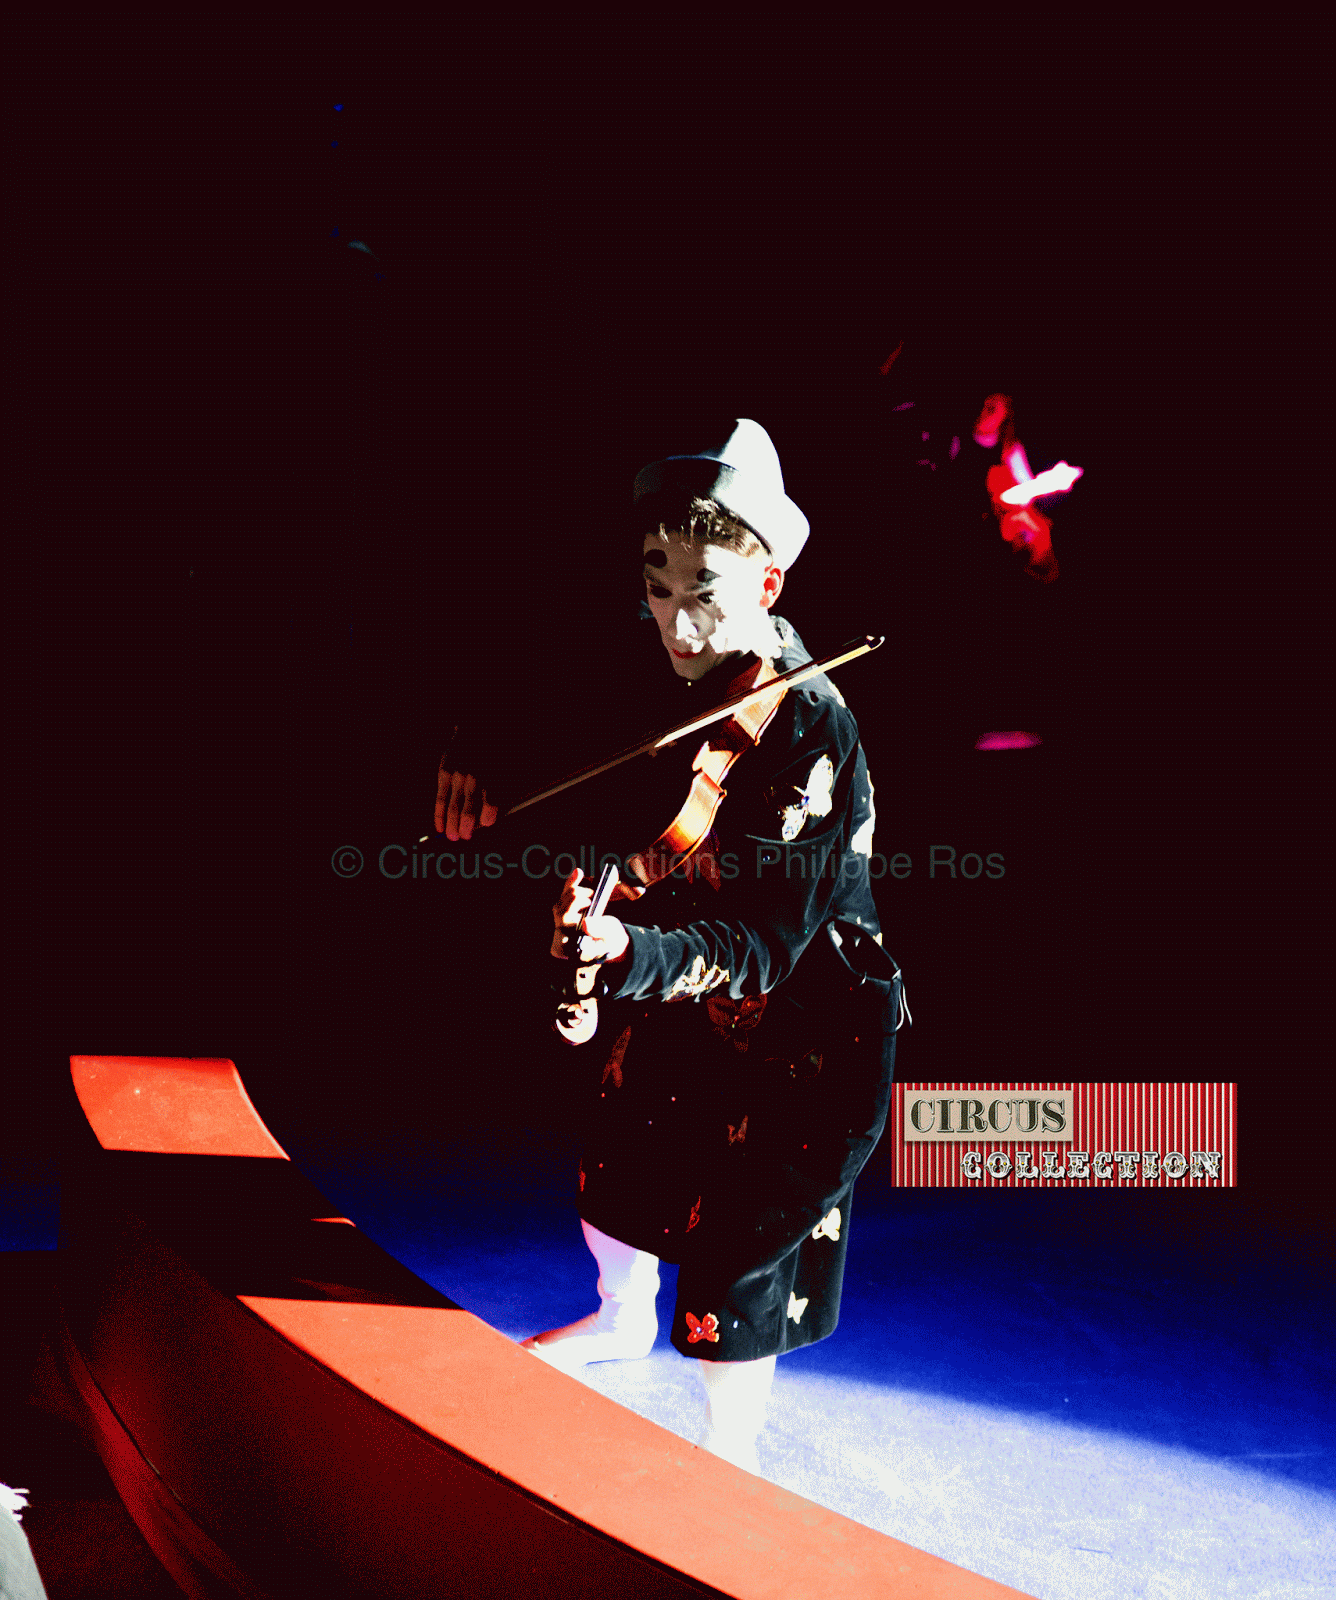 clown blanc jouant du violon